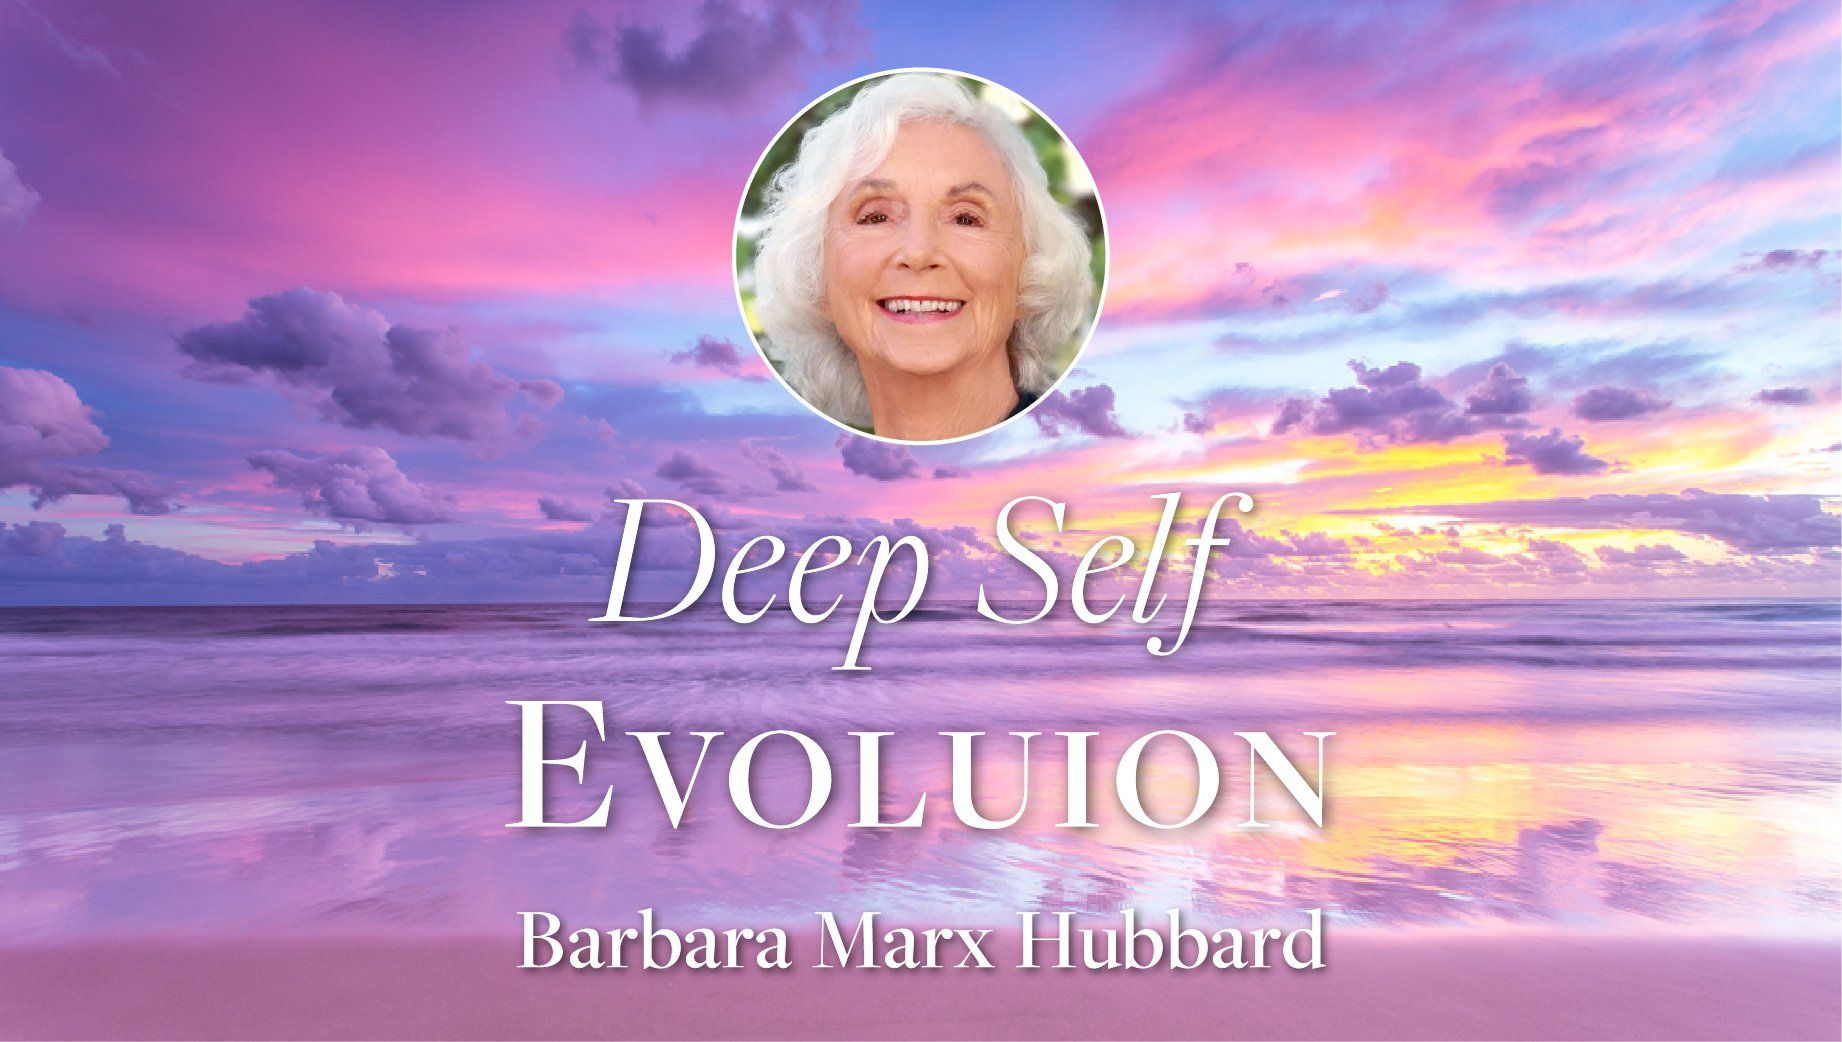 Deep Self Evolution with Barbara Marx Hubbard